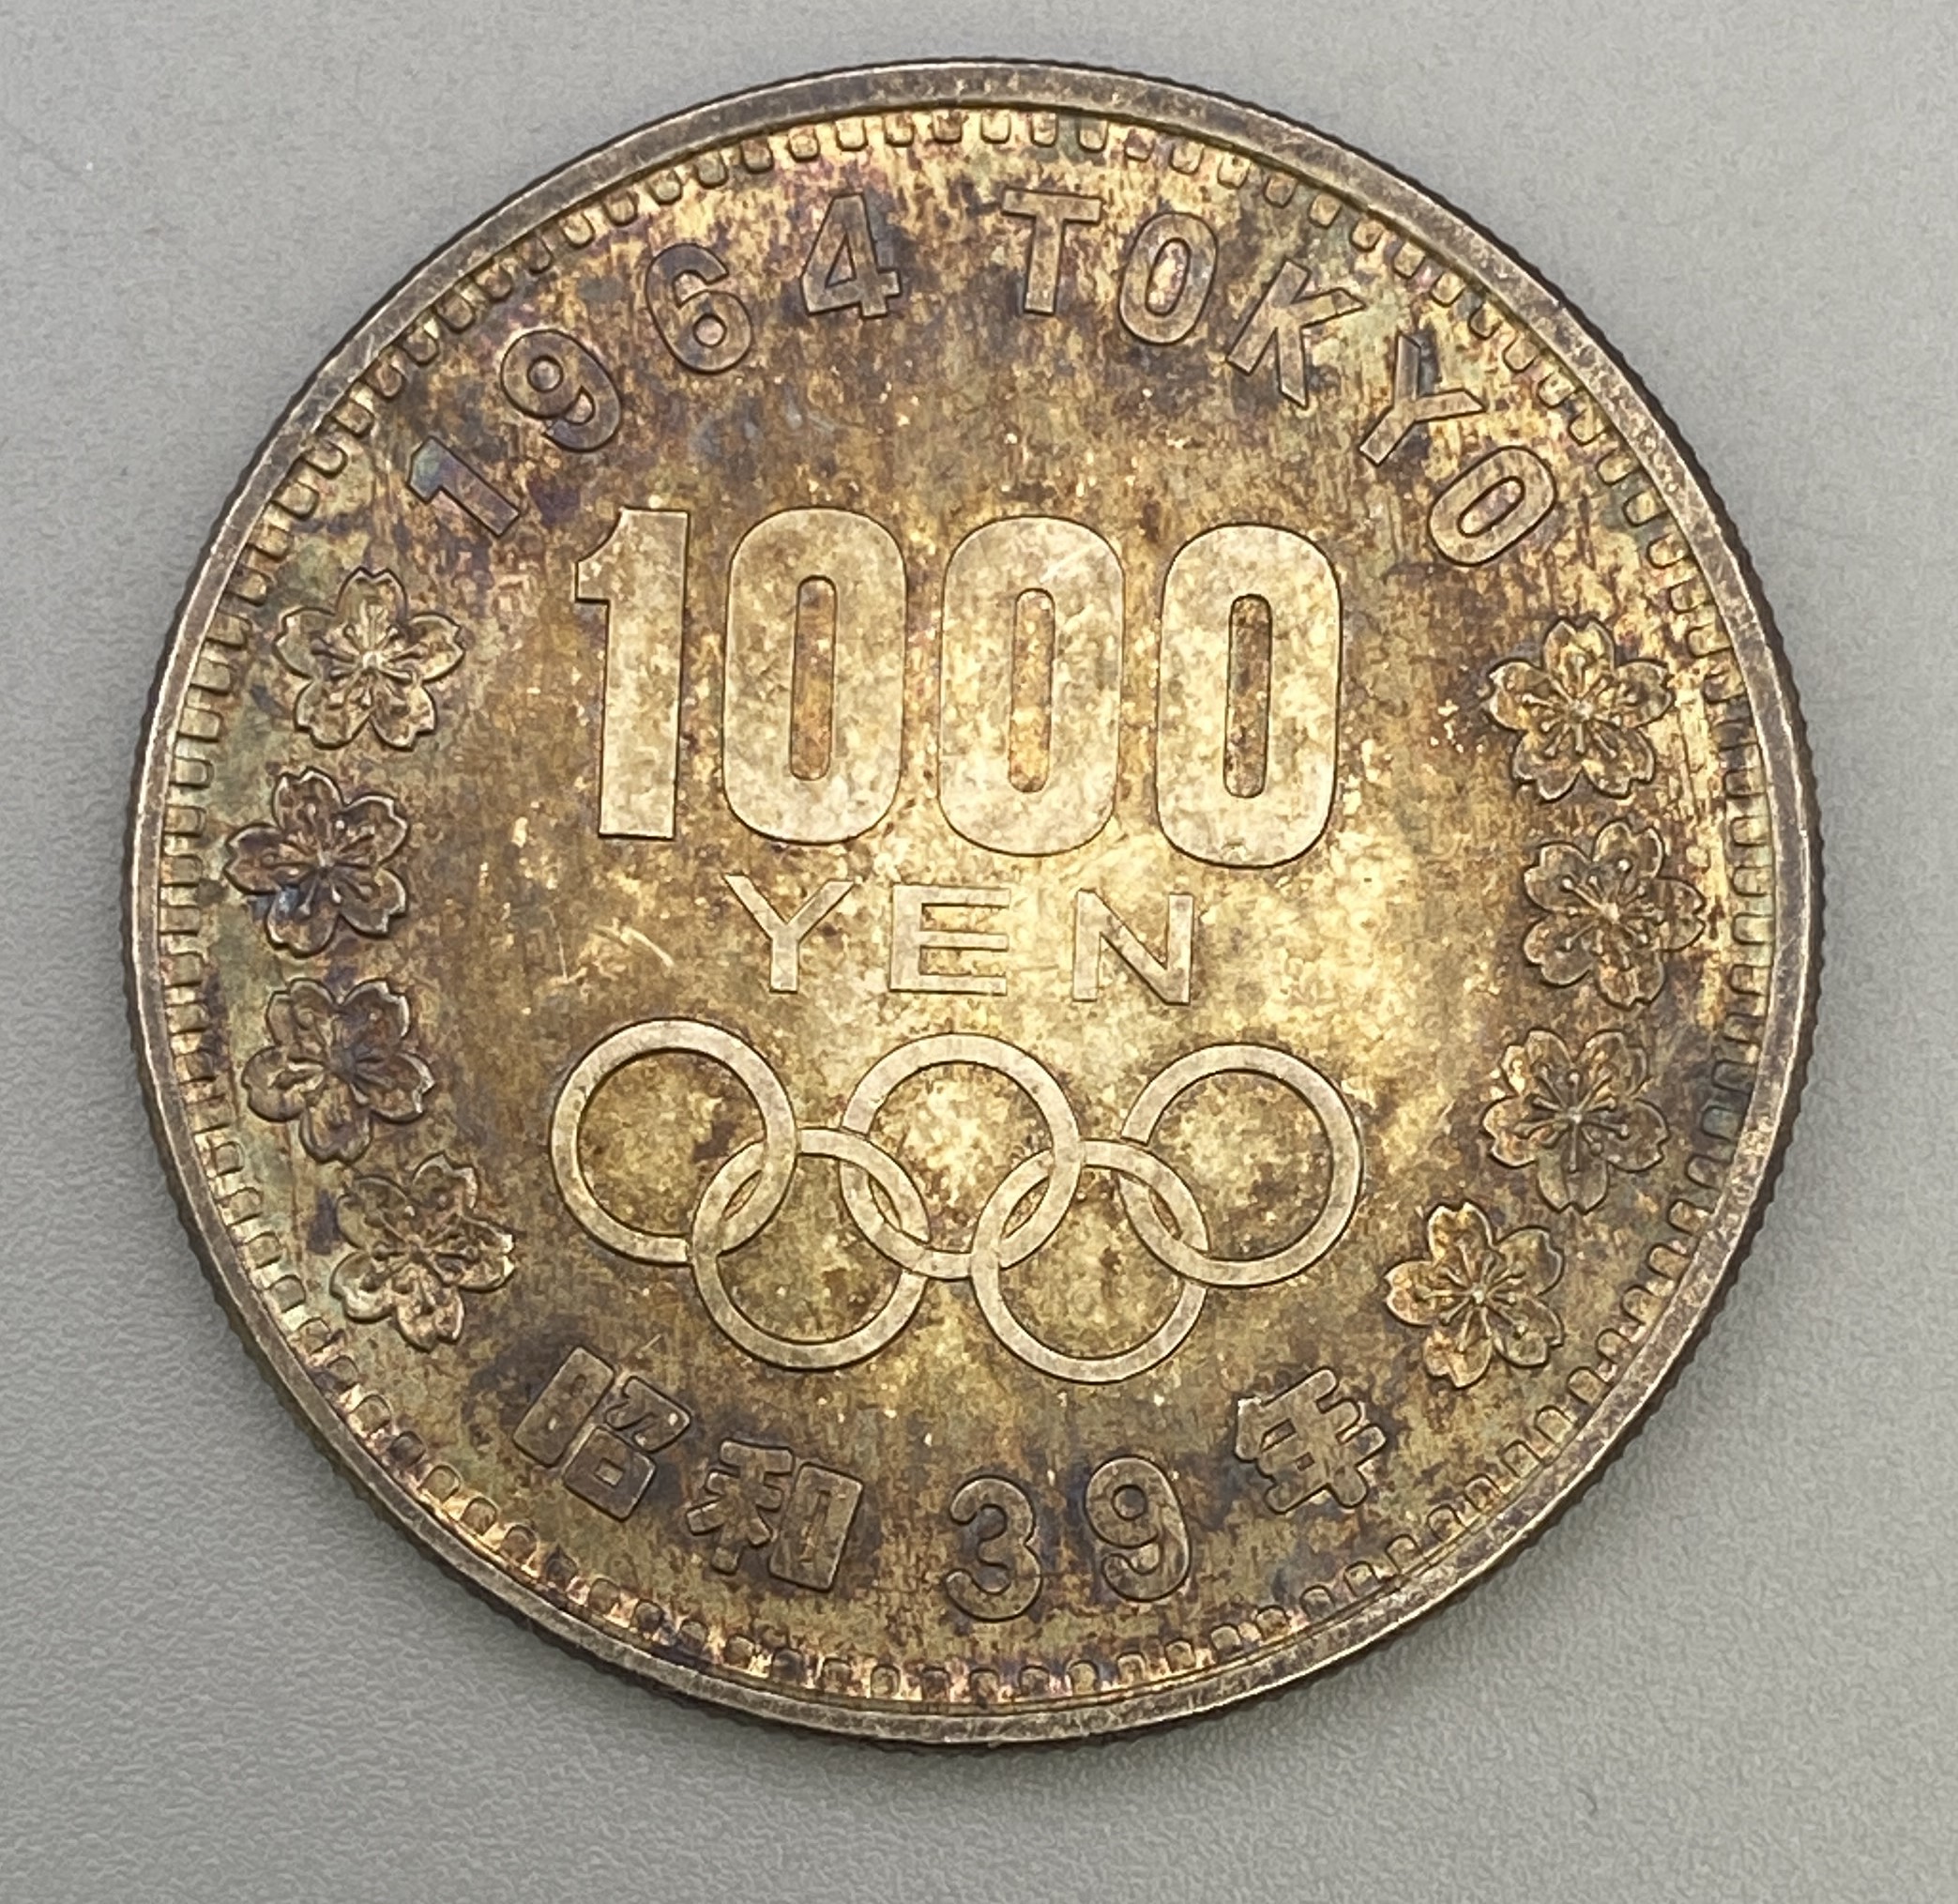 東京オリンピックの1000円銀貨を買取致しました